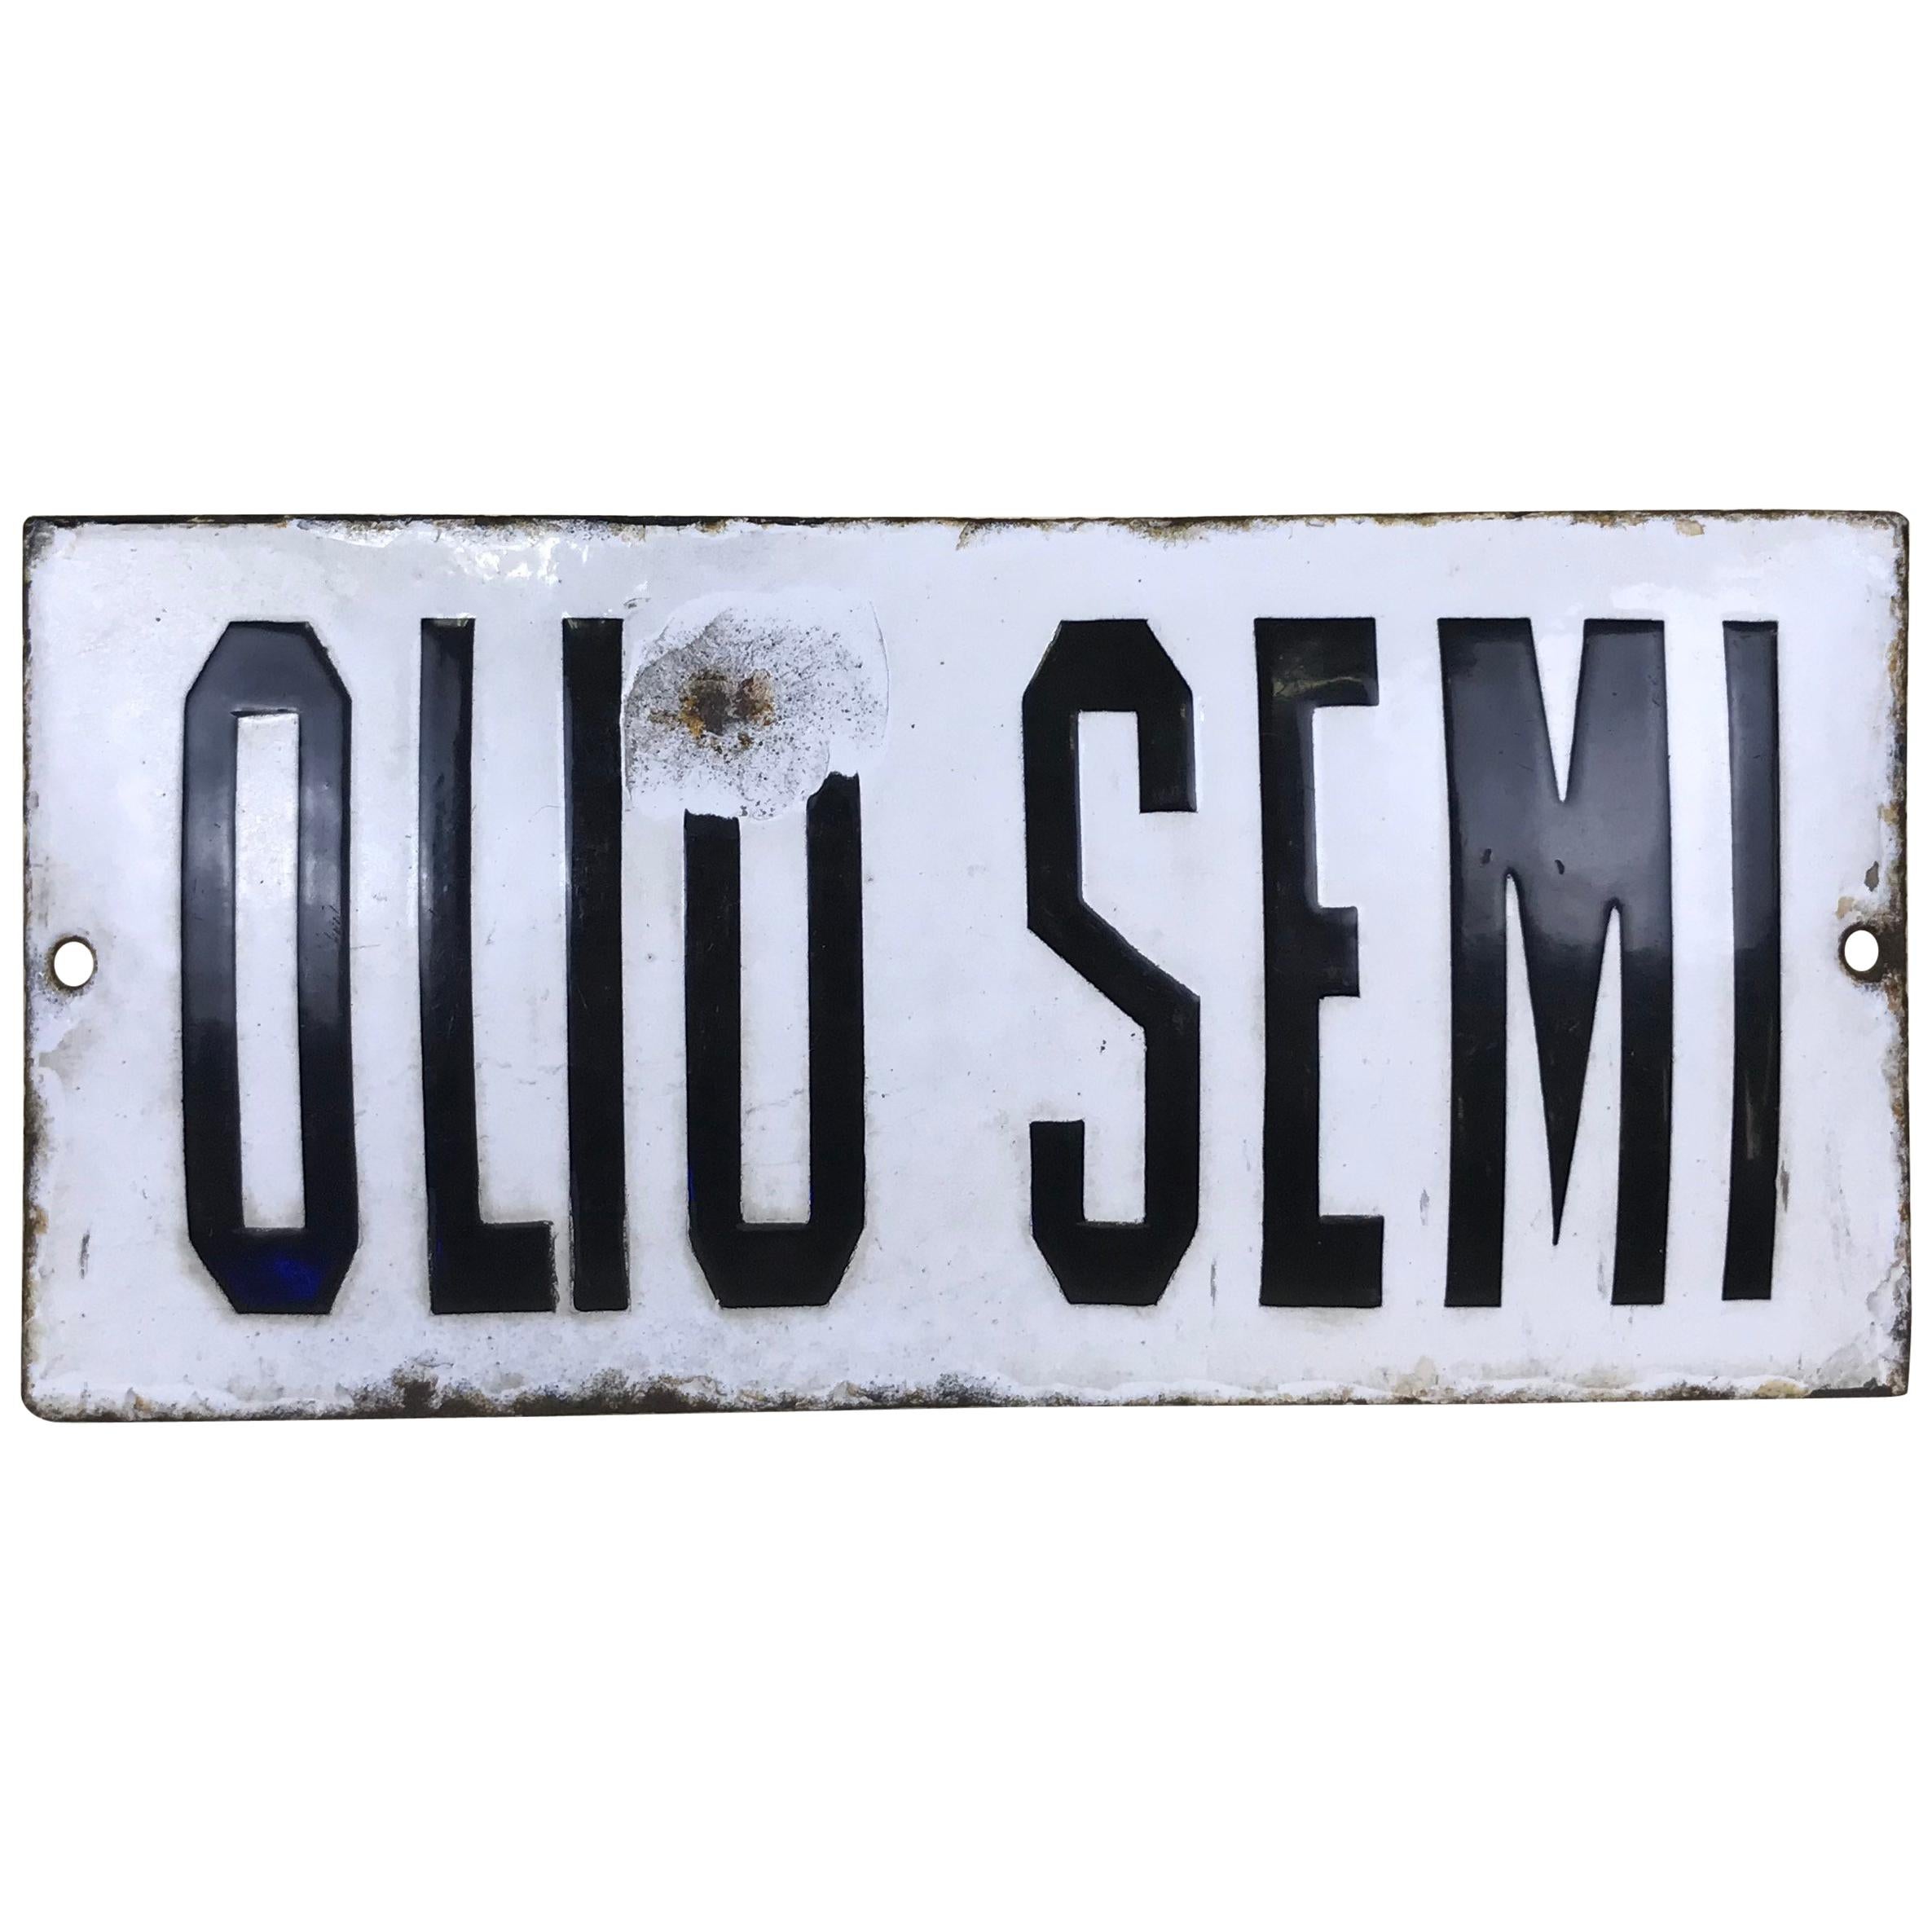 1920s Vintage Italian Enamel Metal Sign "Olio Semi", 'Seed Oil'